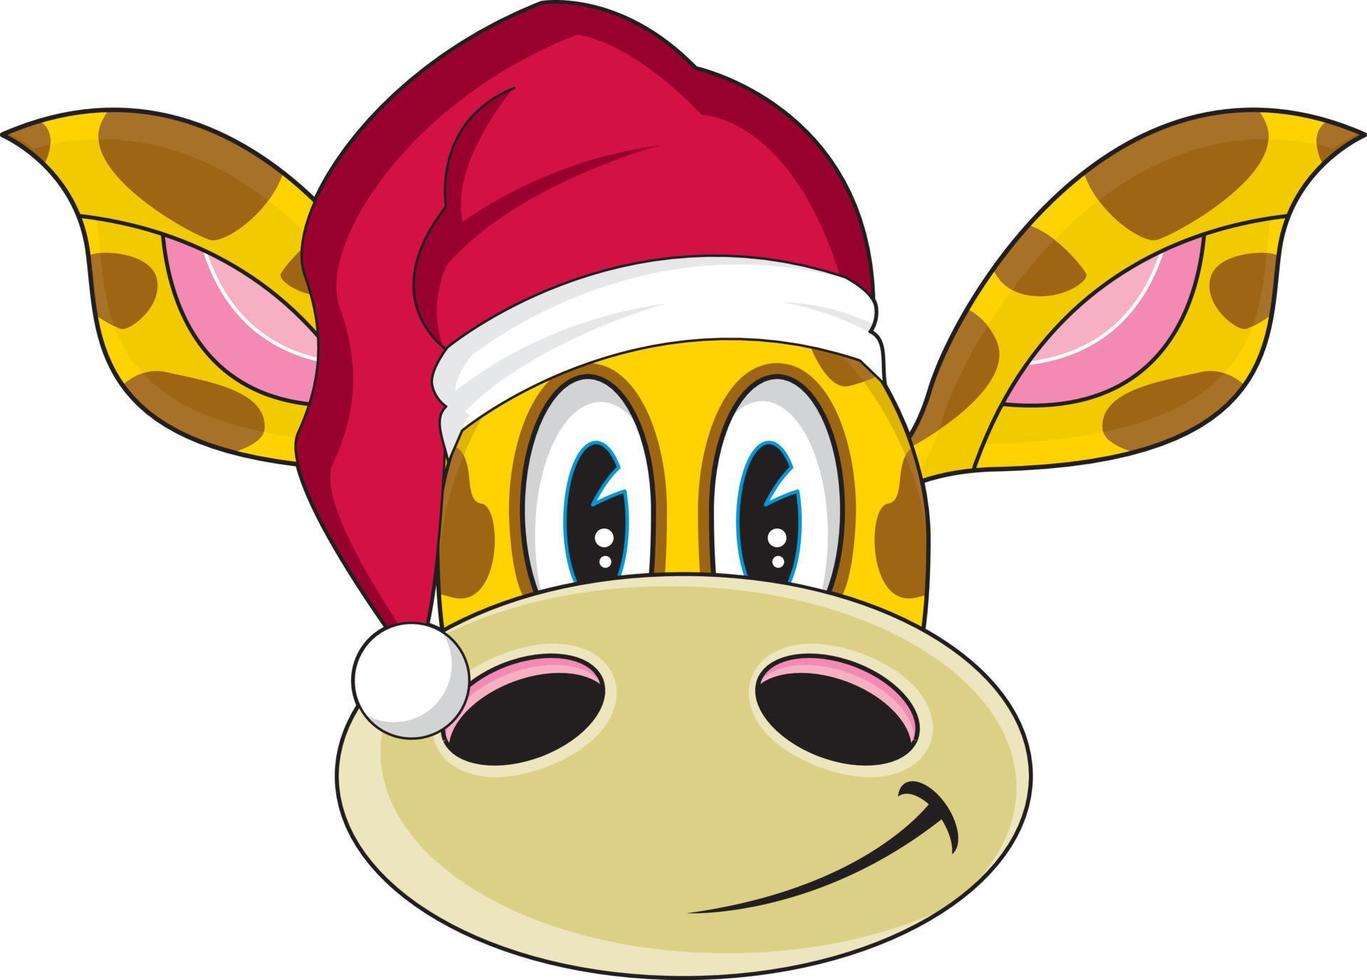 Cute Cartoon Santa Claus Christmas Giraffe Character vector